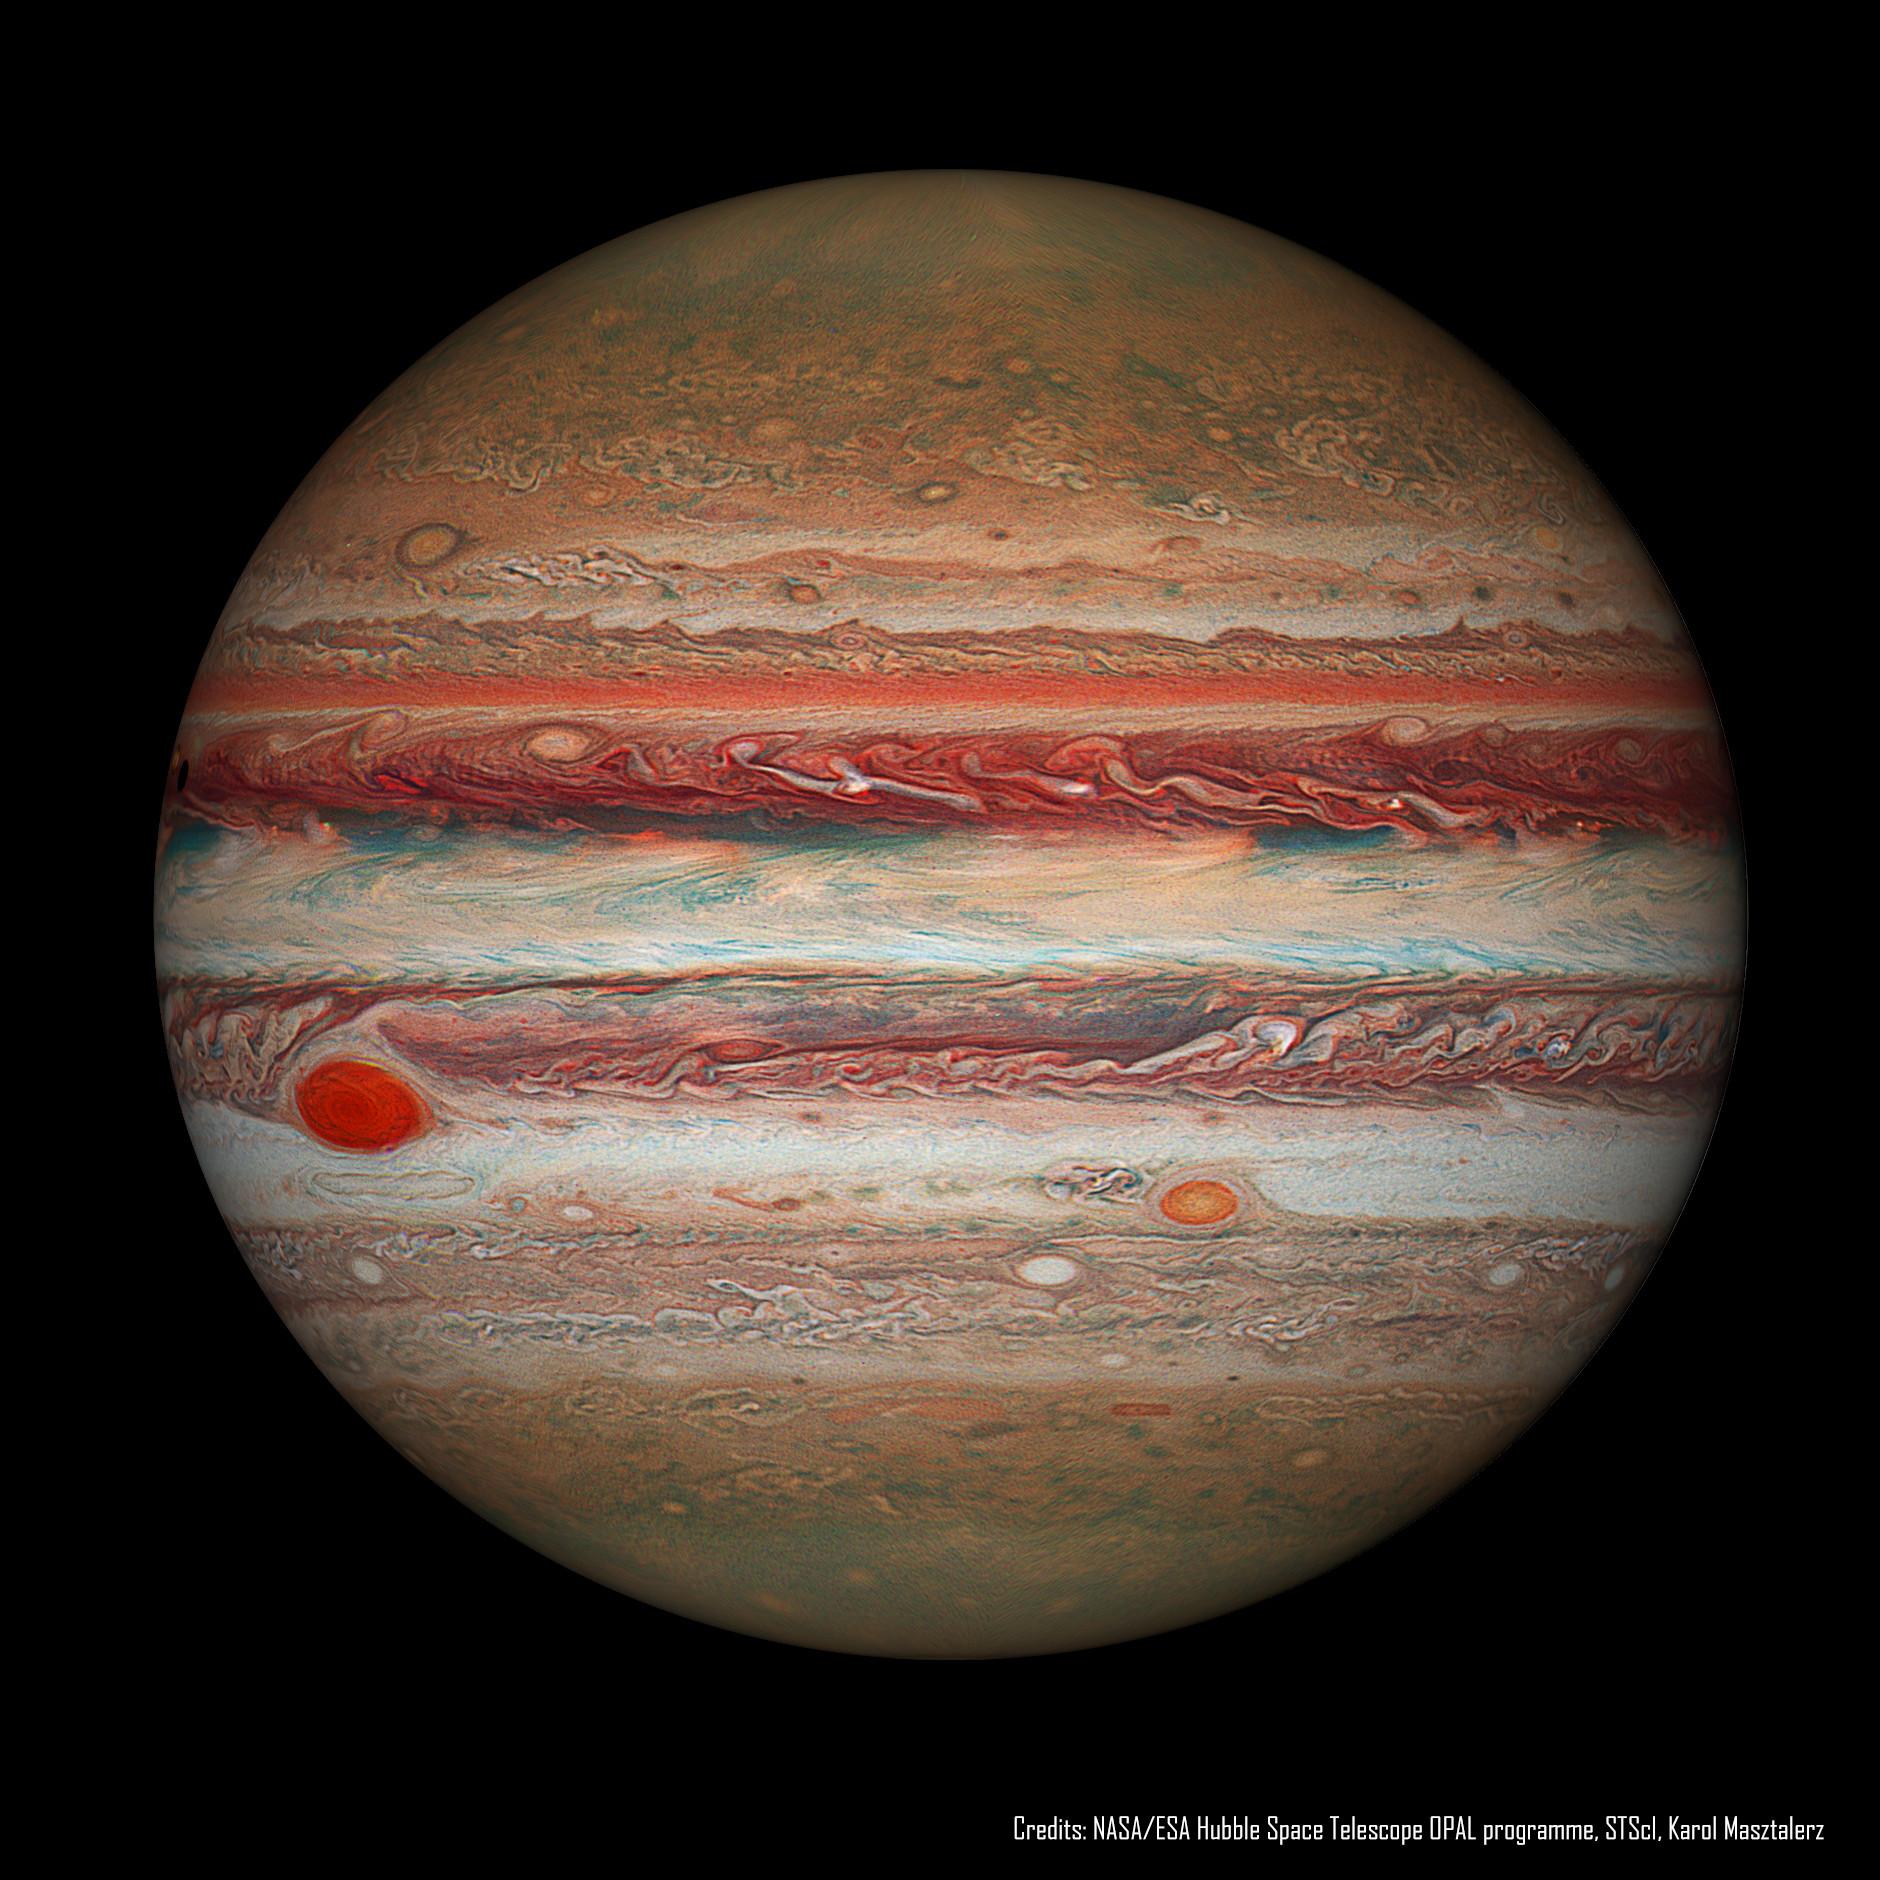 صورة تلسكوبية لكوكب المشتري كاملاً حيث تظهر البقعة الحمراء واضحة وتظهر الخطوط والأنماط على سطحه بشكل مفصّل. عولجت الصورة بطريقة تجعل درجات اللون الأحمر تبدو نابضةً بالحياة.